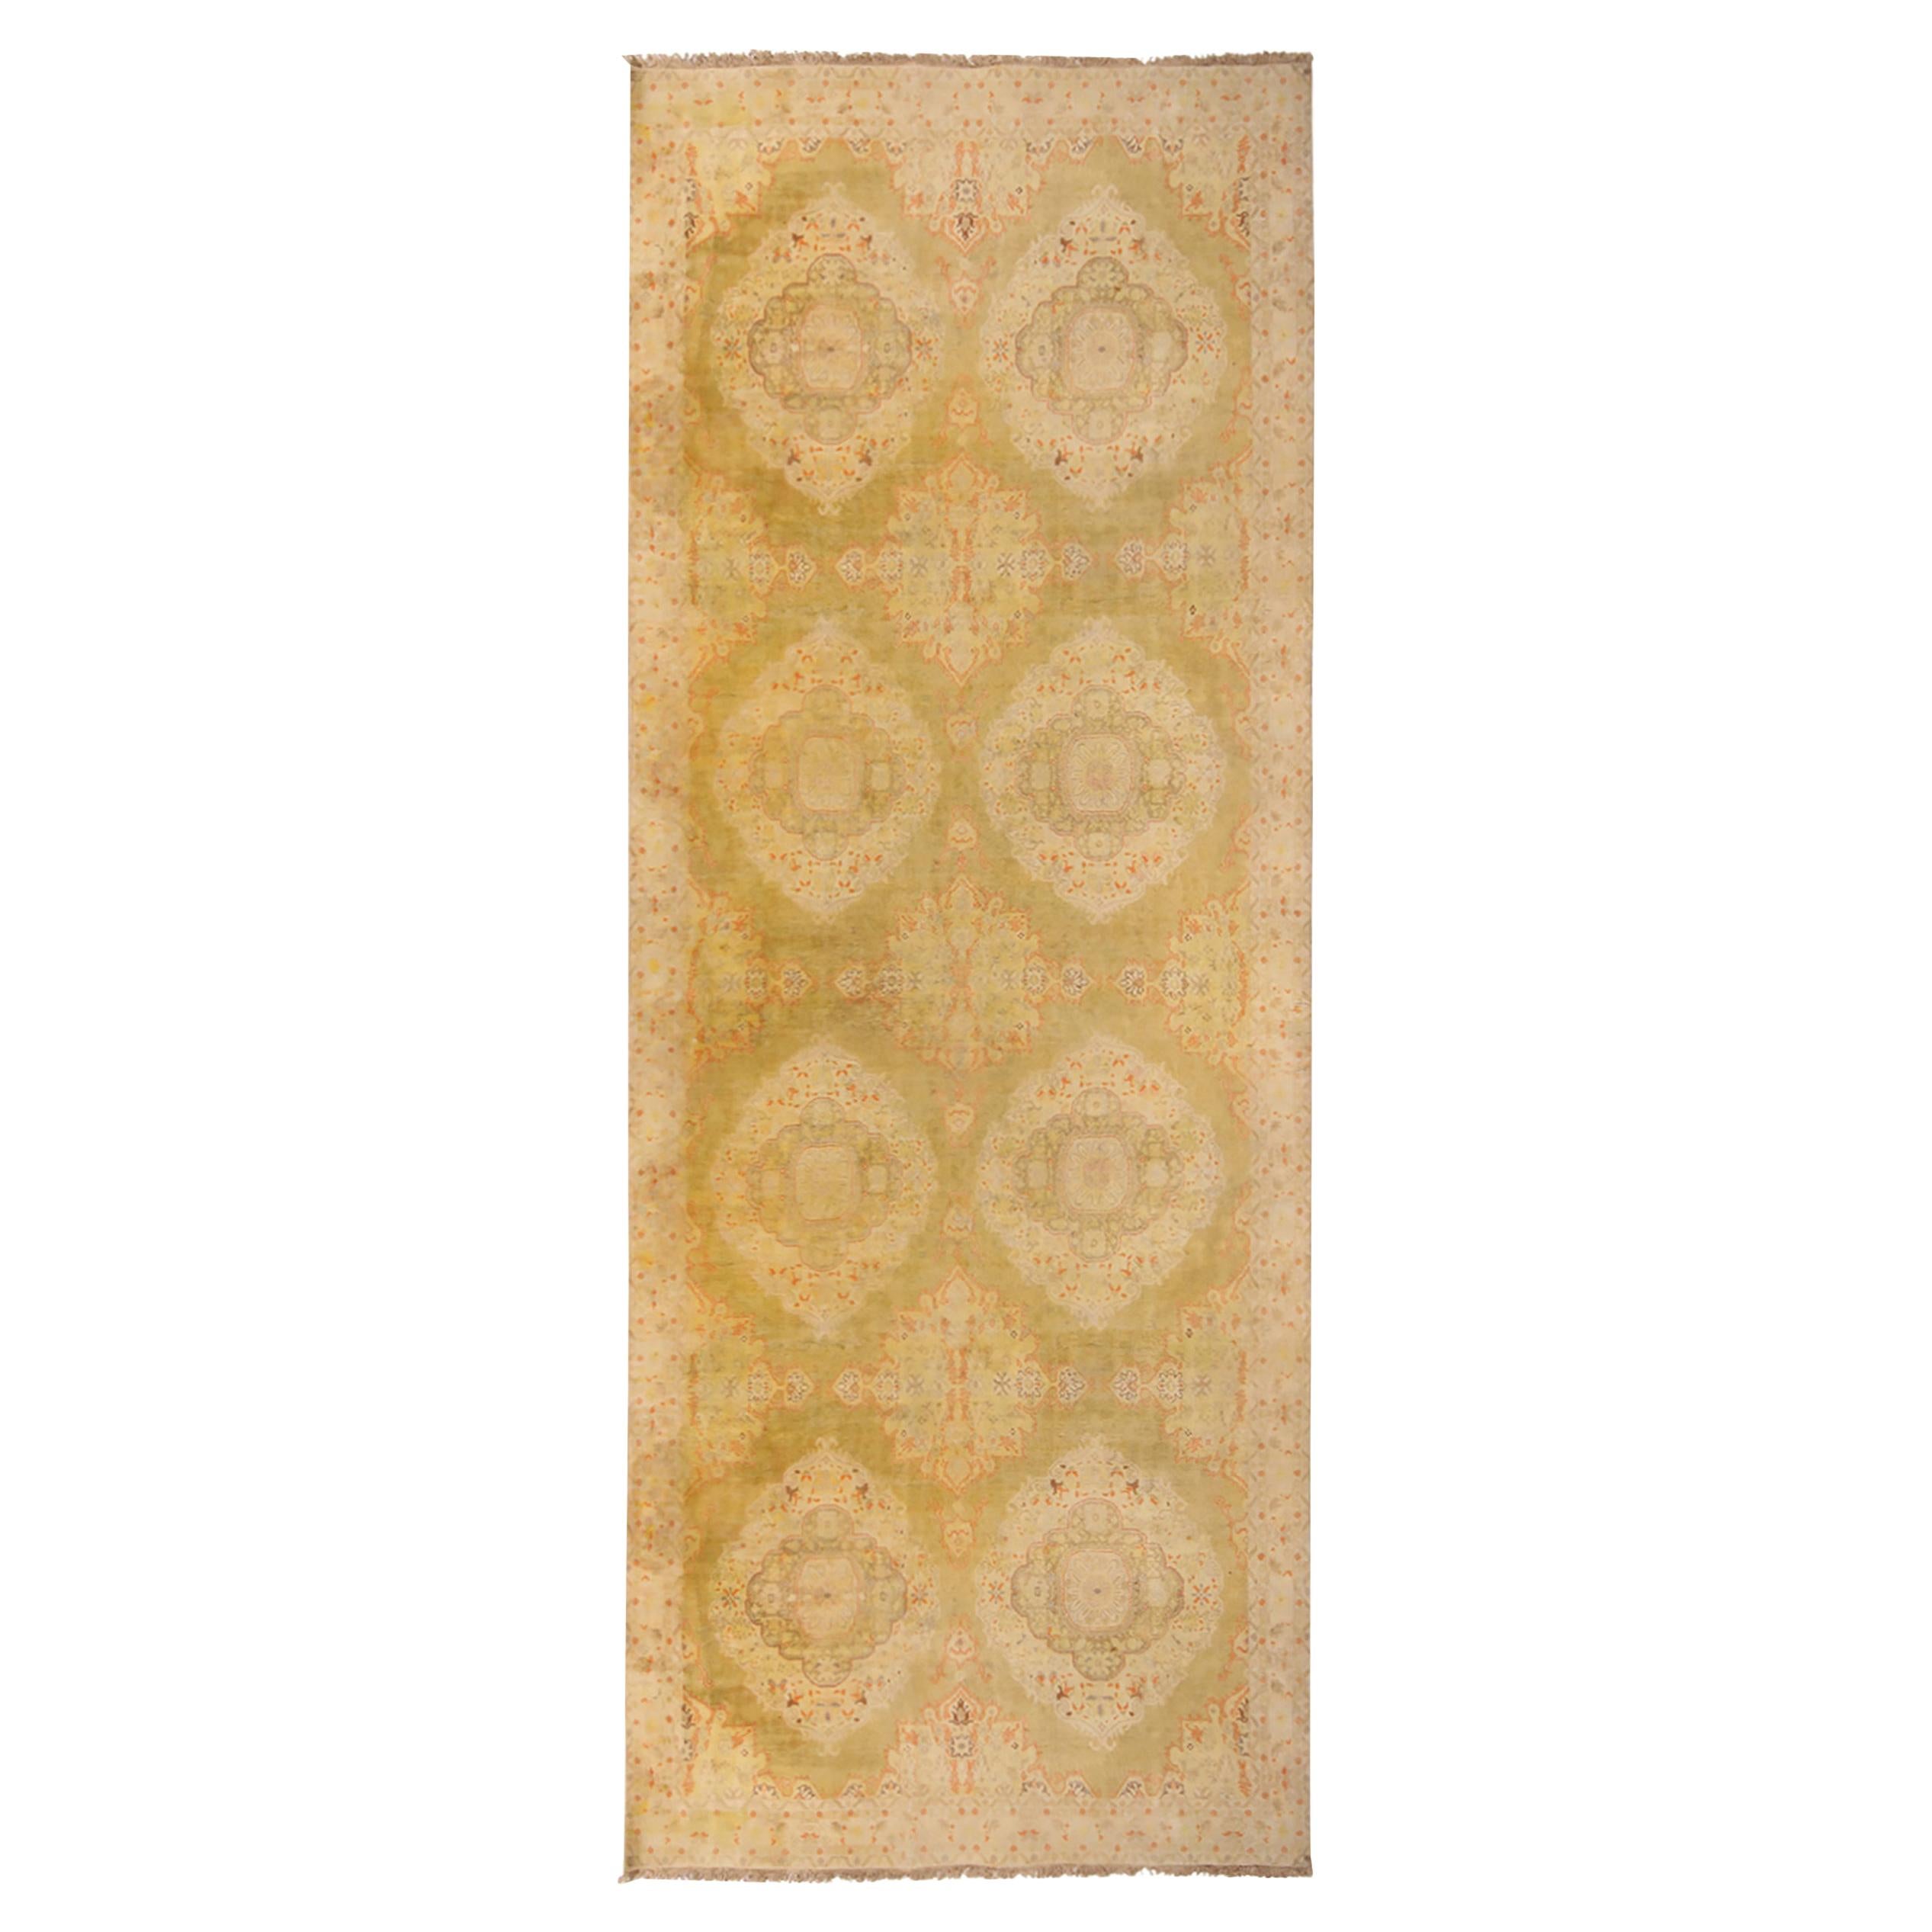 Antiker antiker Agra Teppich aus Baumwolle in Beige, Gold und Rot von Teppich & Kelim